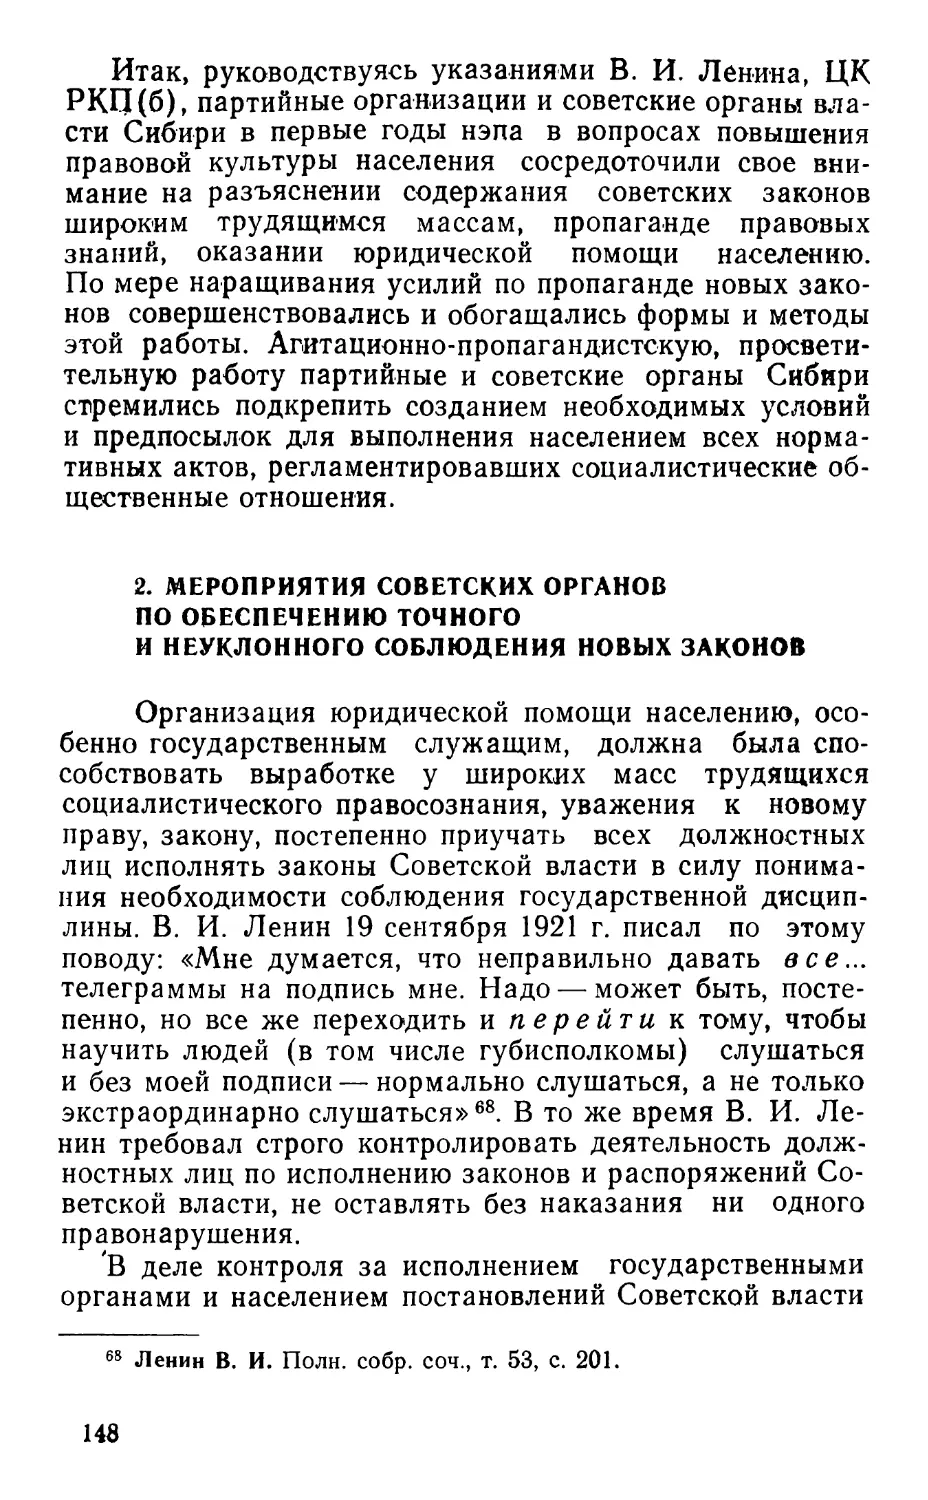 2. Мероприятия советских органов по обеспечению точного и неуклонного соблюдения новых законов